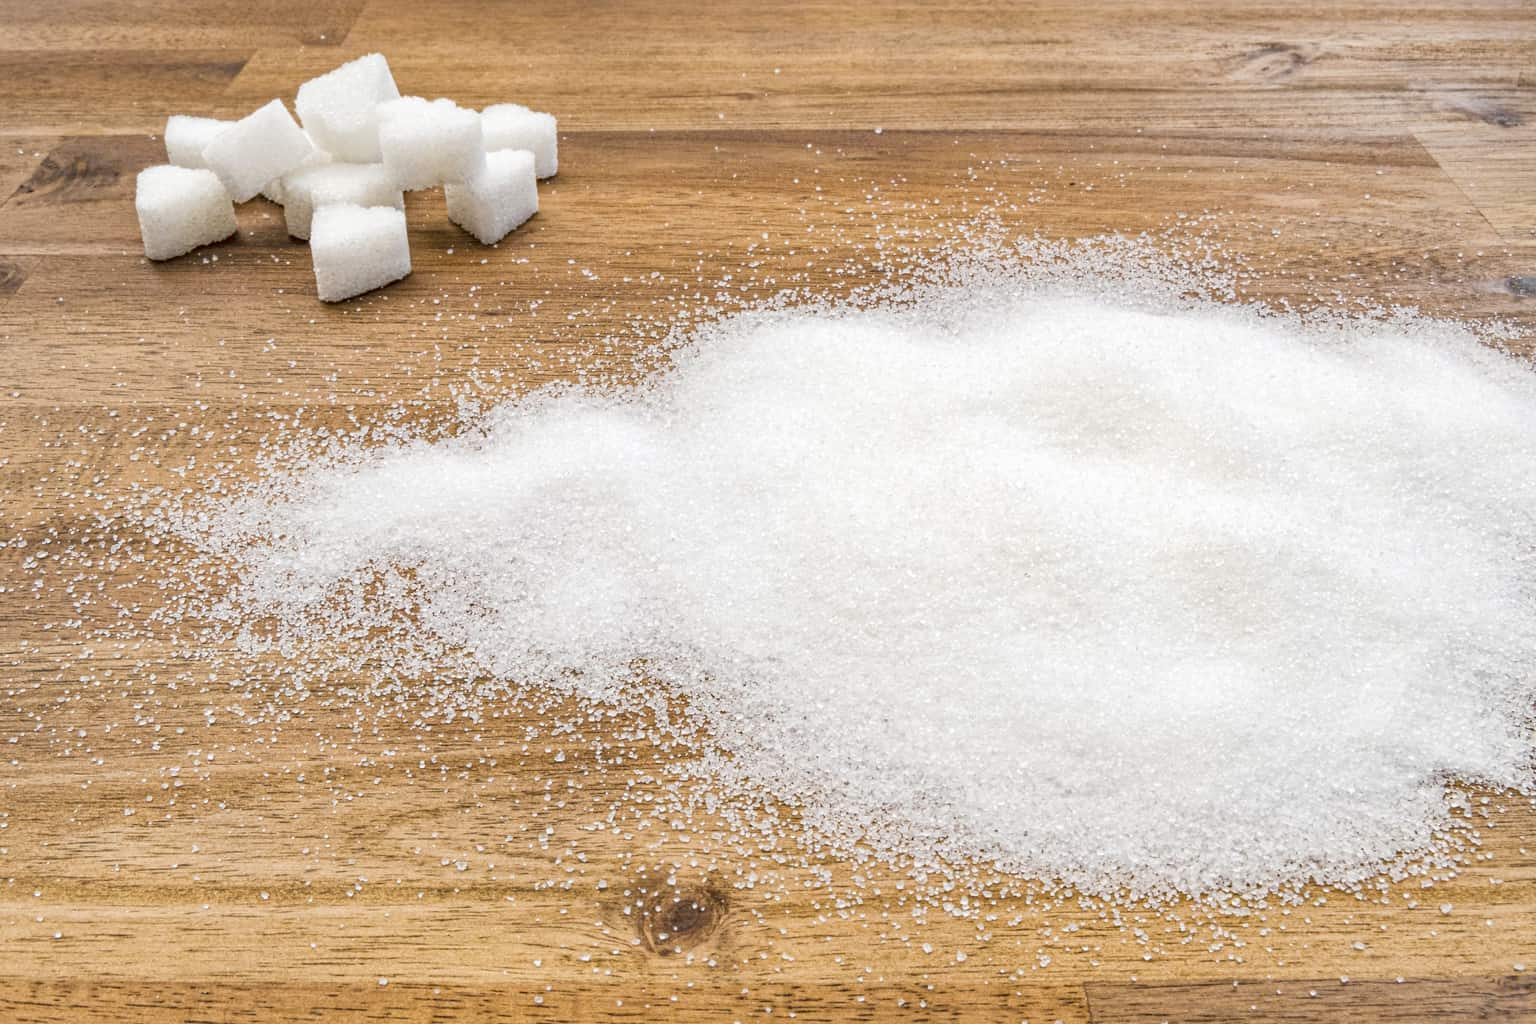 sugar spread on table